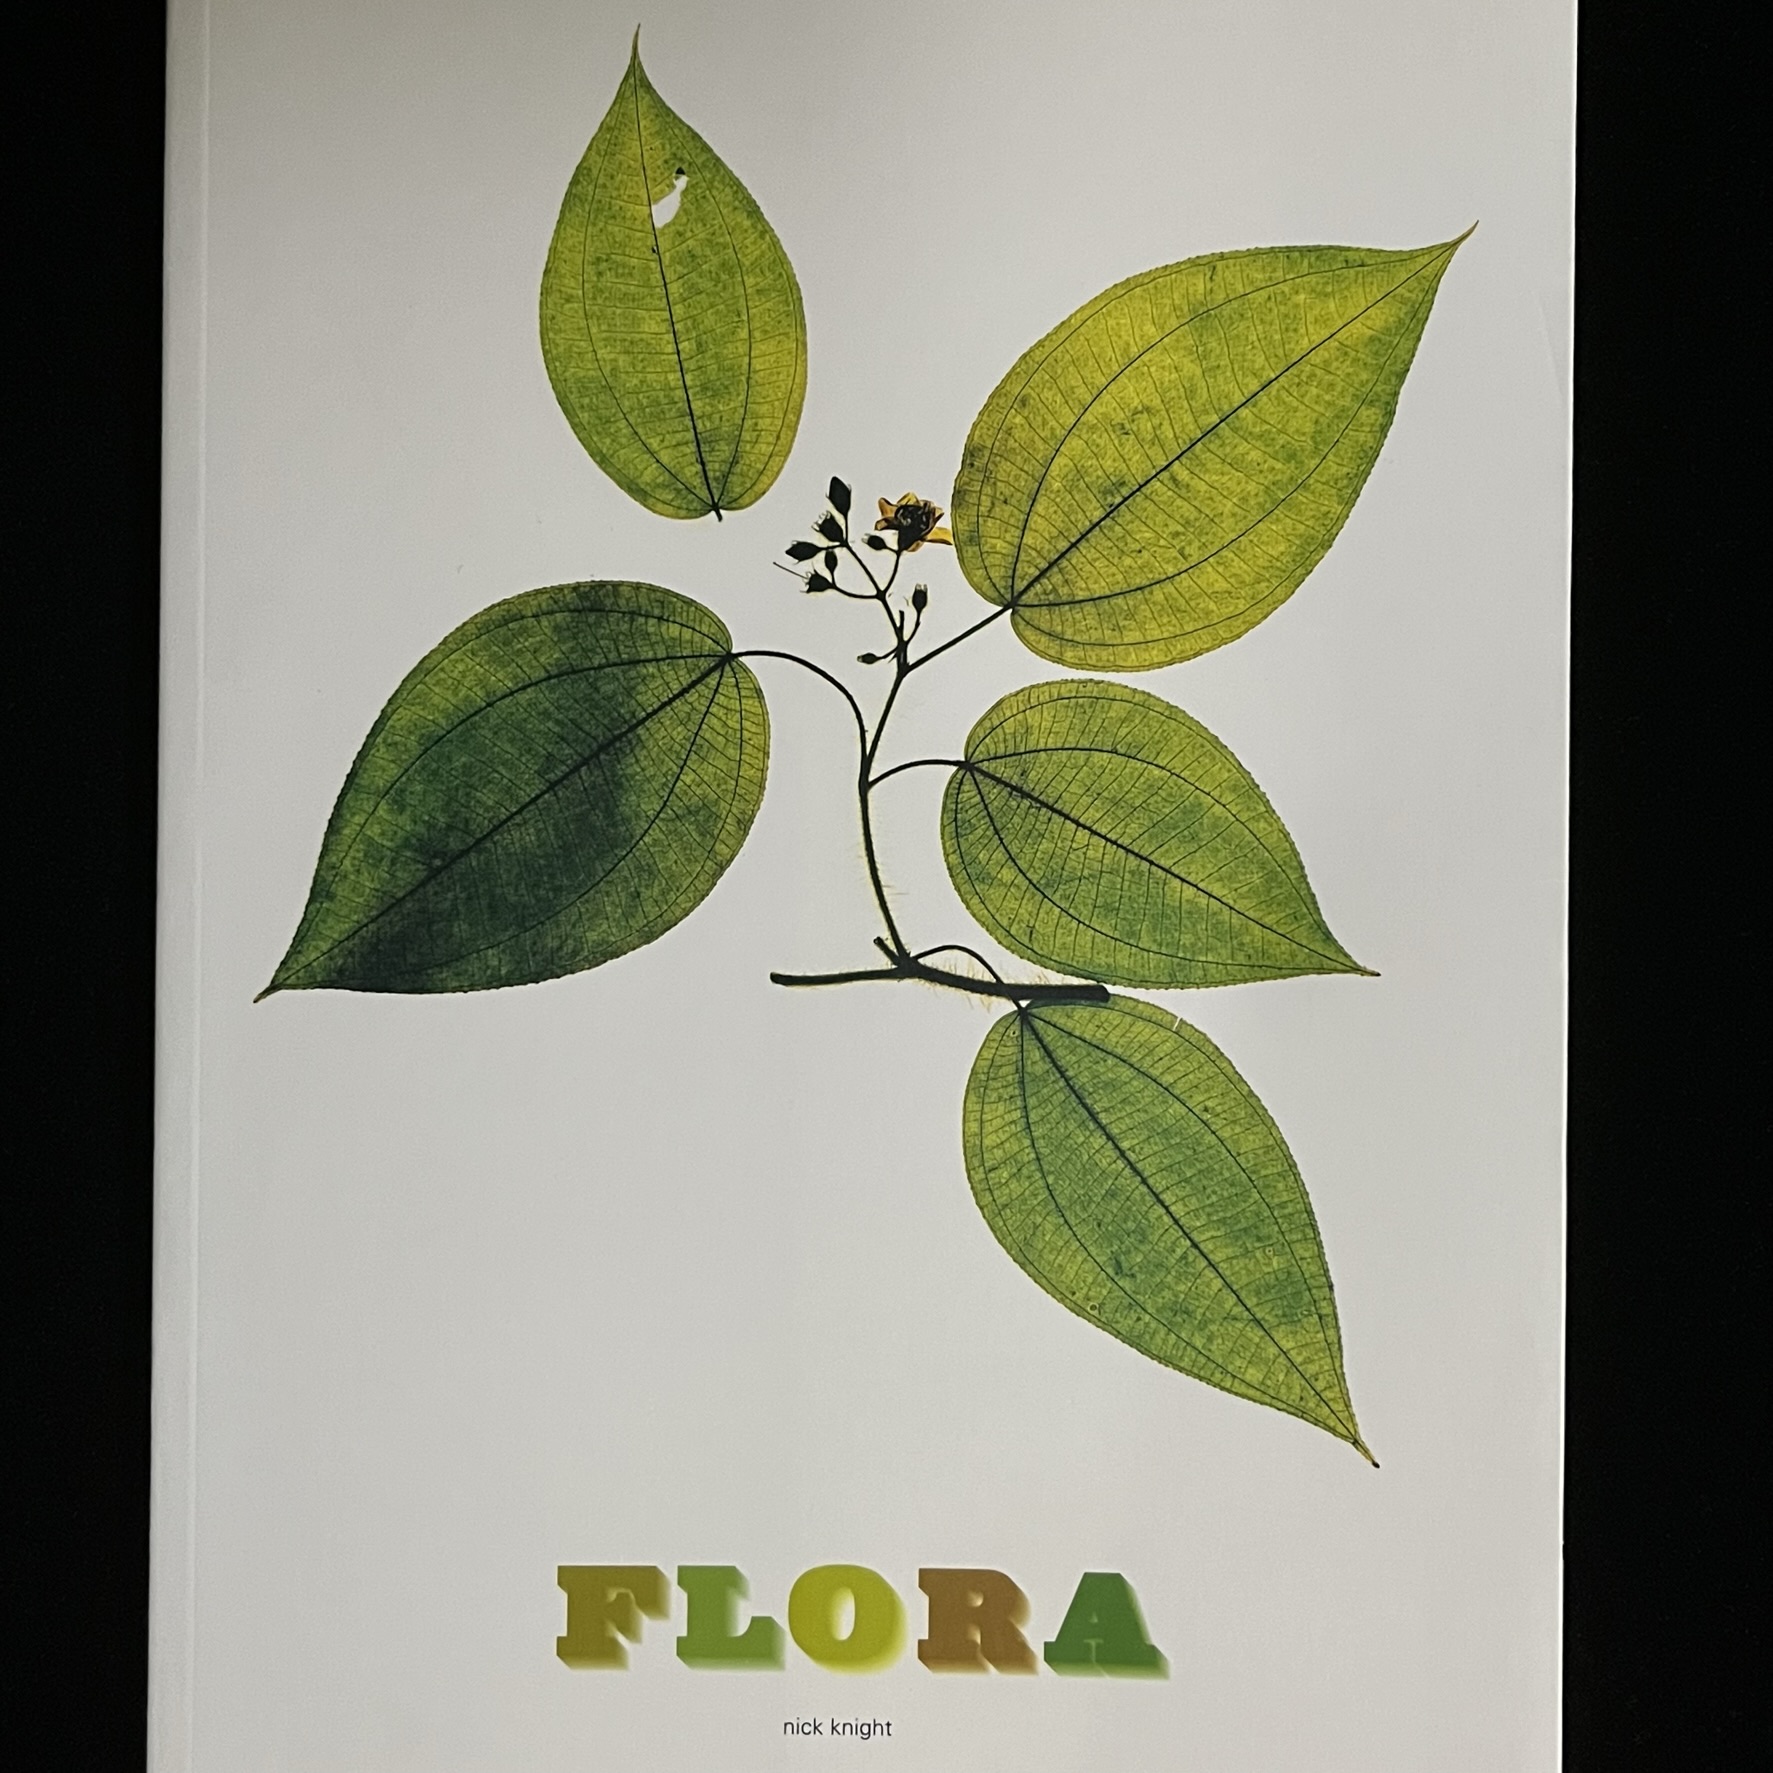 『FLORA』の写真集の表紙の写真。葉脈まで透けて見える緑の葉っぱと茎とお花の押し花の写真です。